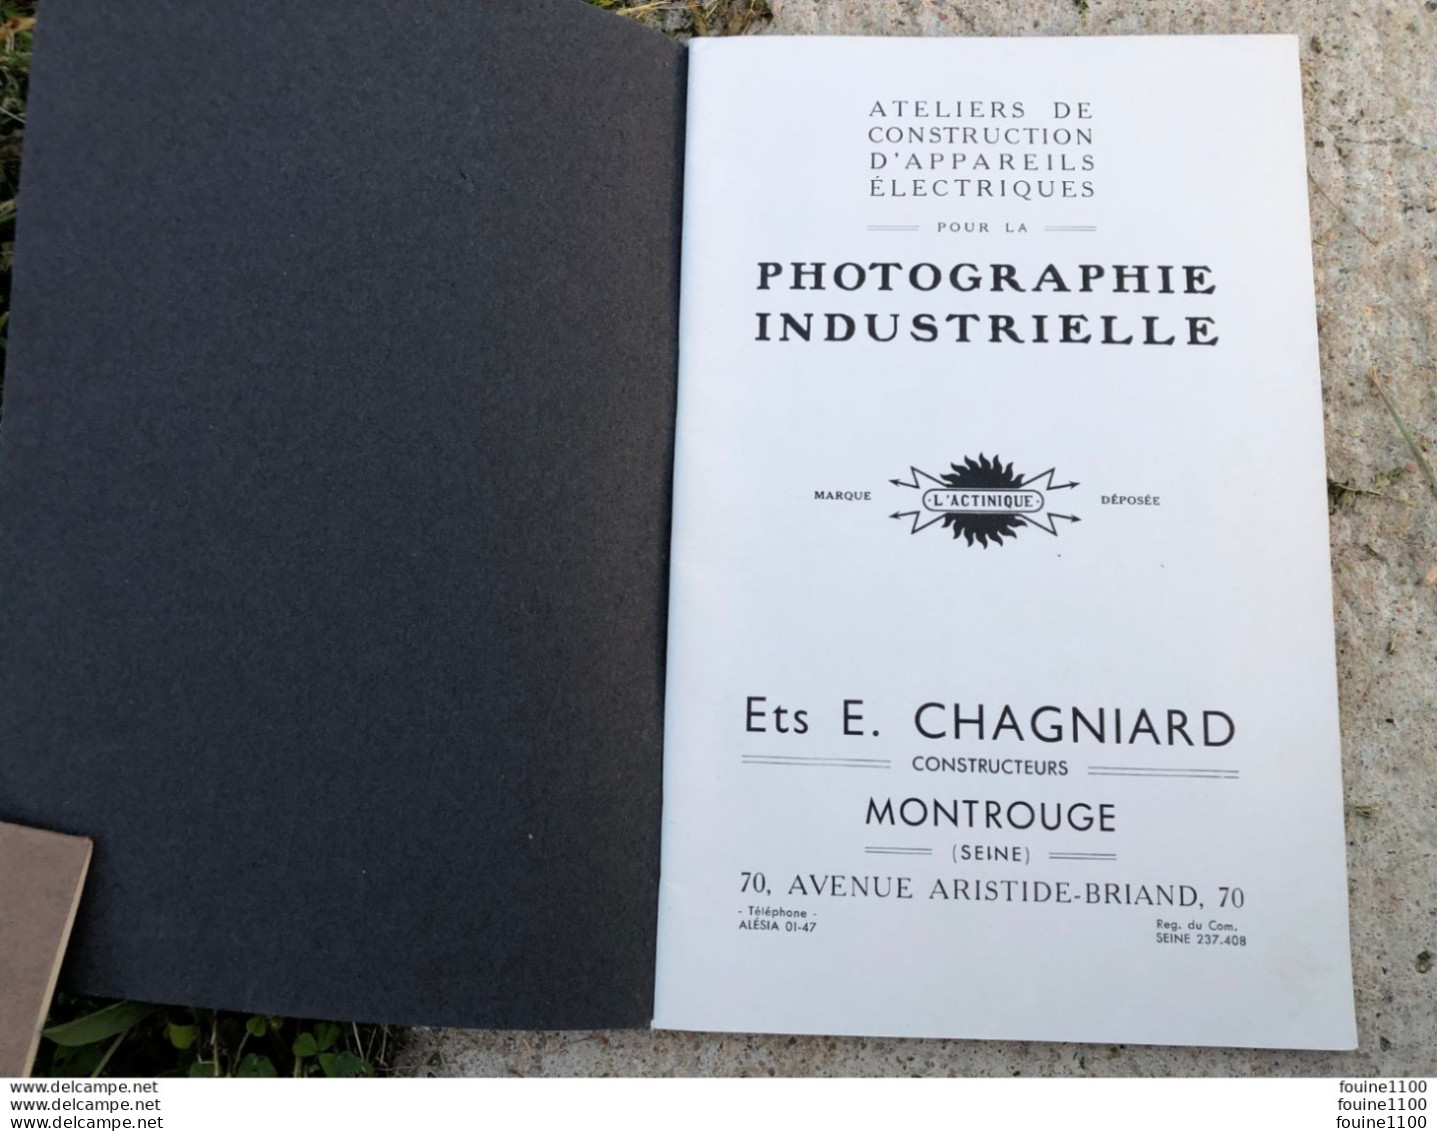 Catalogue L'ACTINIQUE Construction D'appareils électriques Pour Photographie Industrielle Ets E. Chagniard à MONTROUGE - Photographs